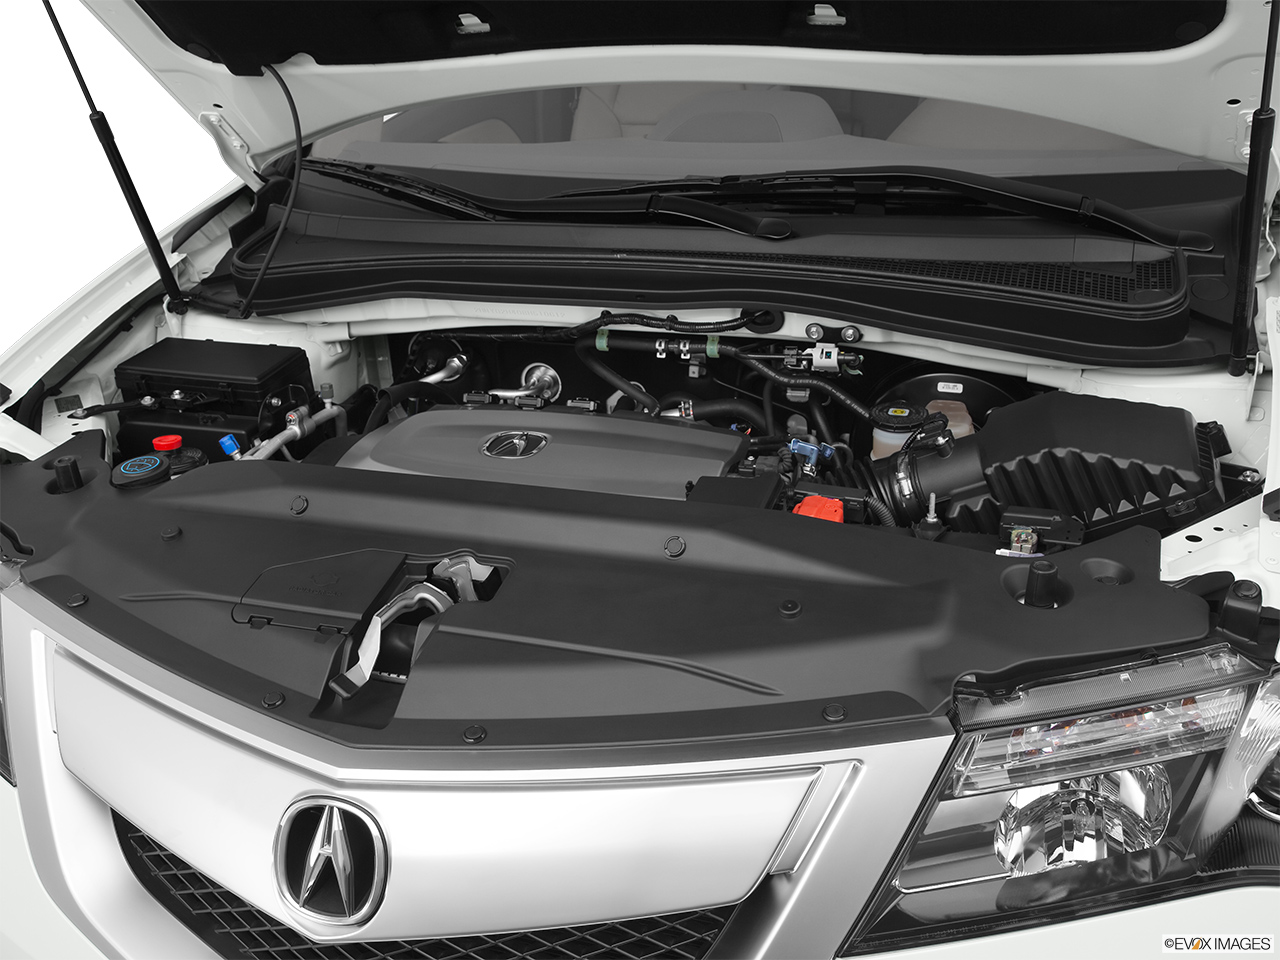 2011 Acura MDX MDX Engine. 